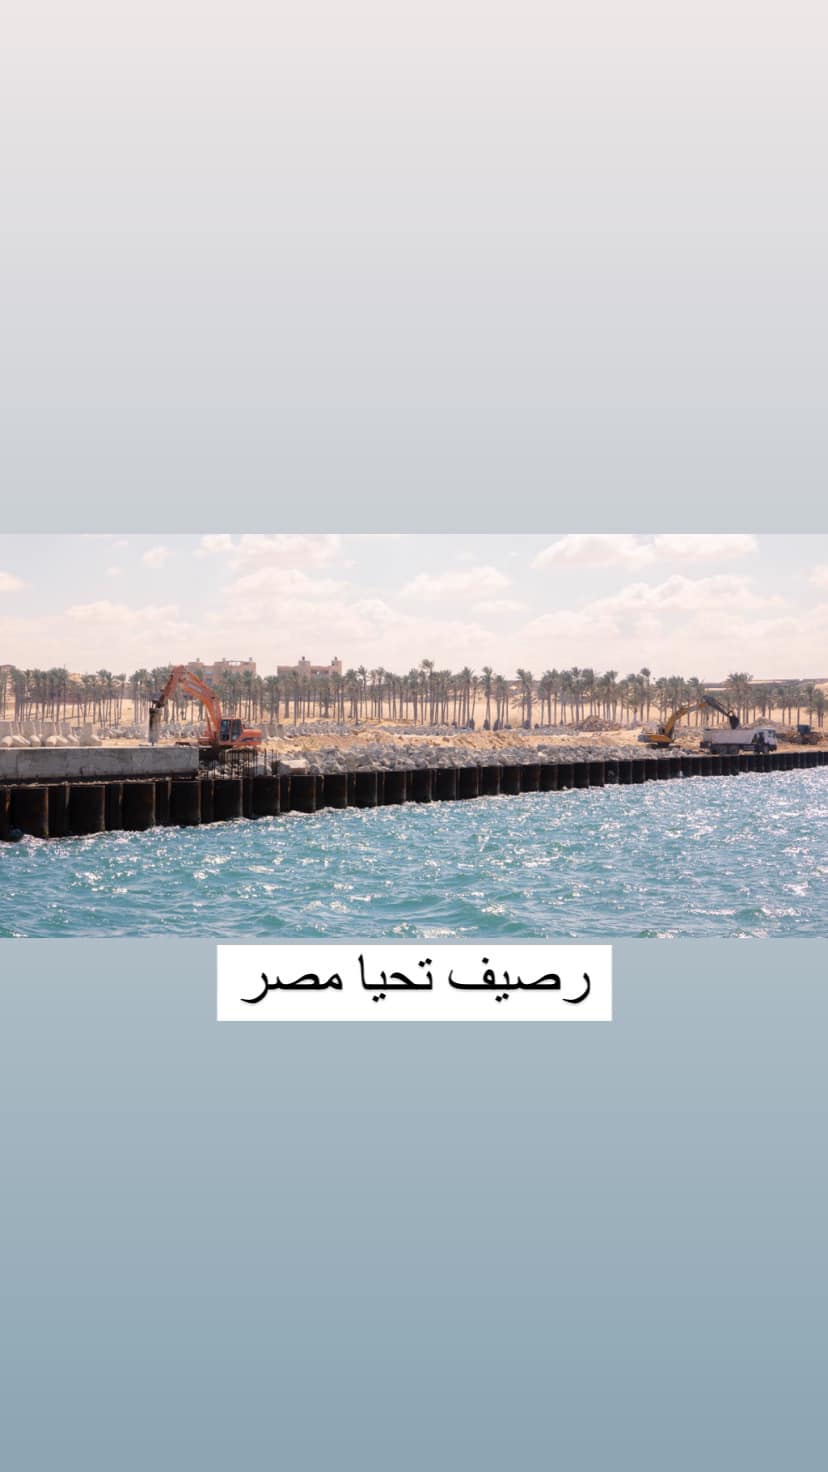 رصيف تحيا مصر بميناء العريش